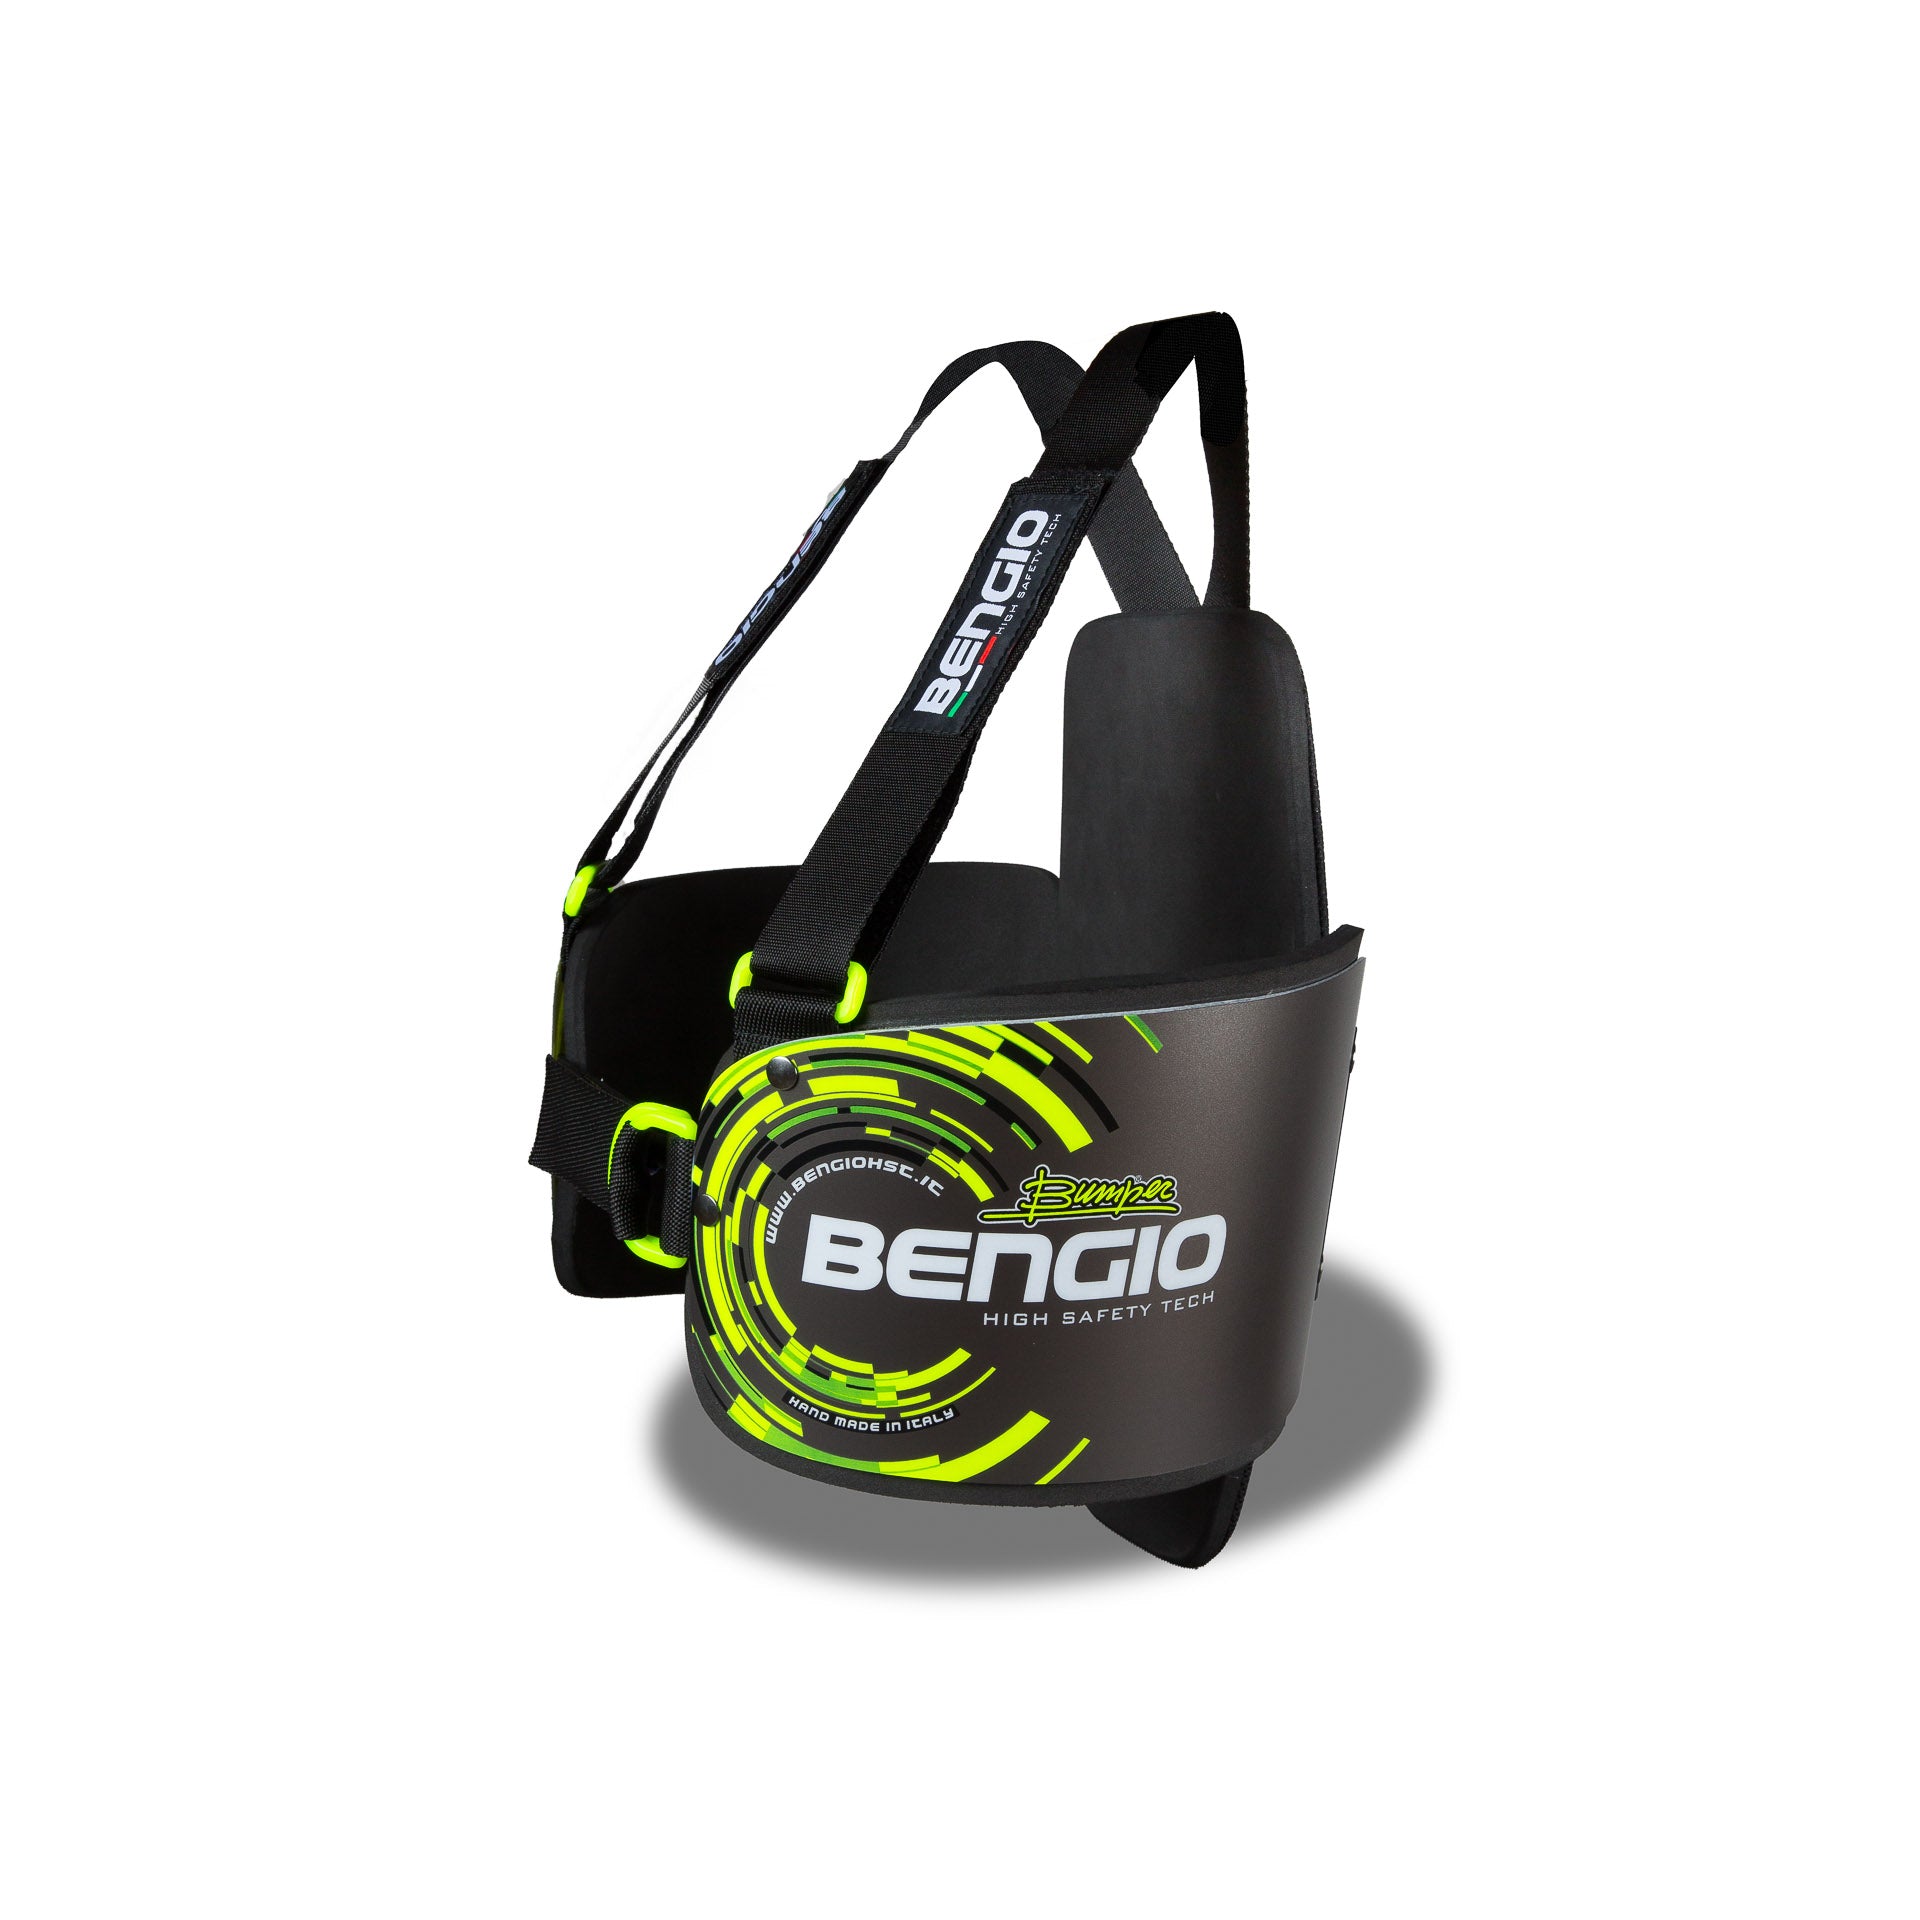 BENGIO STDPLXSGY BUMPER Plus Захист ребер для картингу, сірий/флюор. жовтий, розмір XS Photo-1 